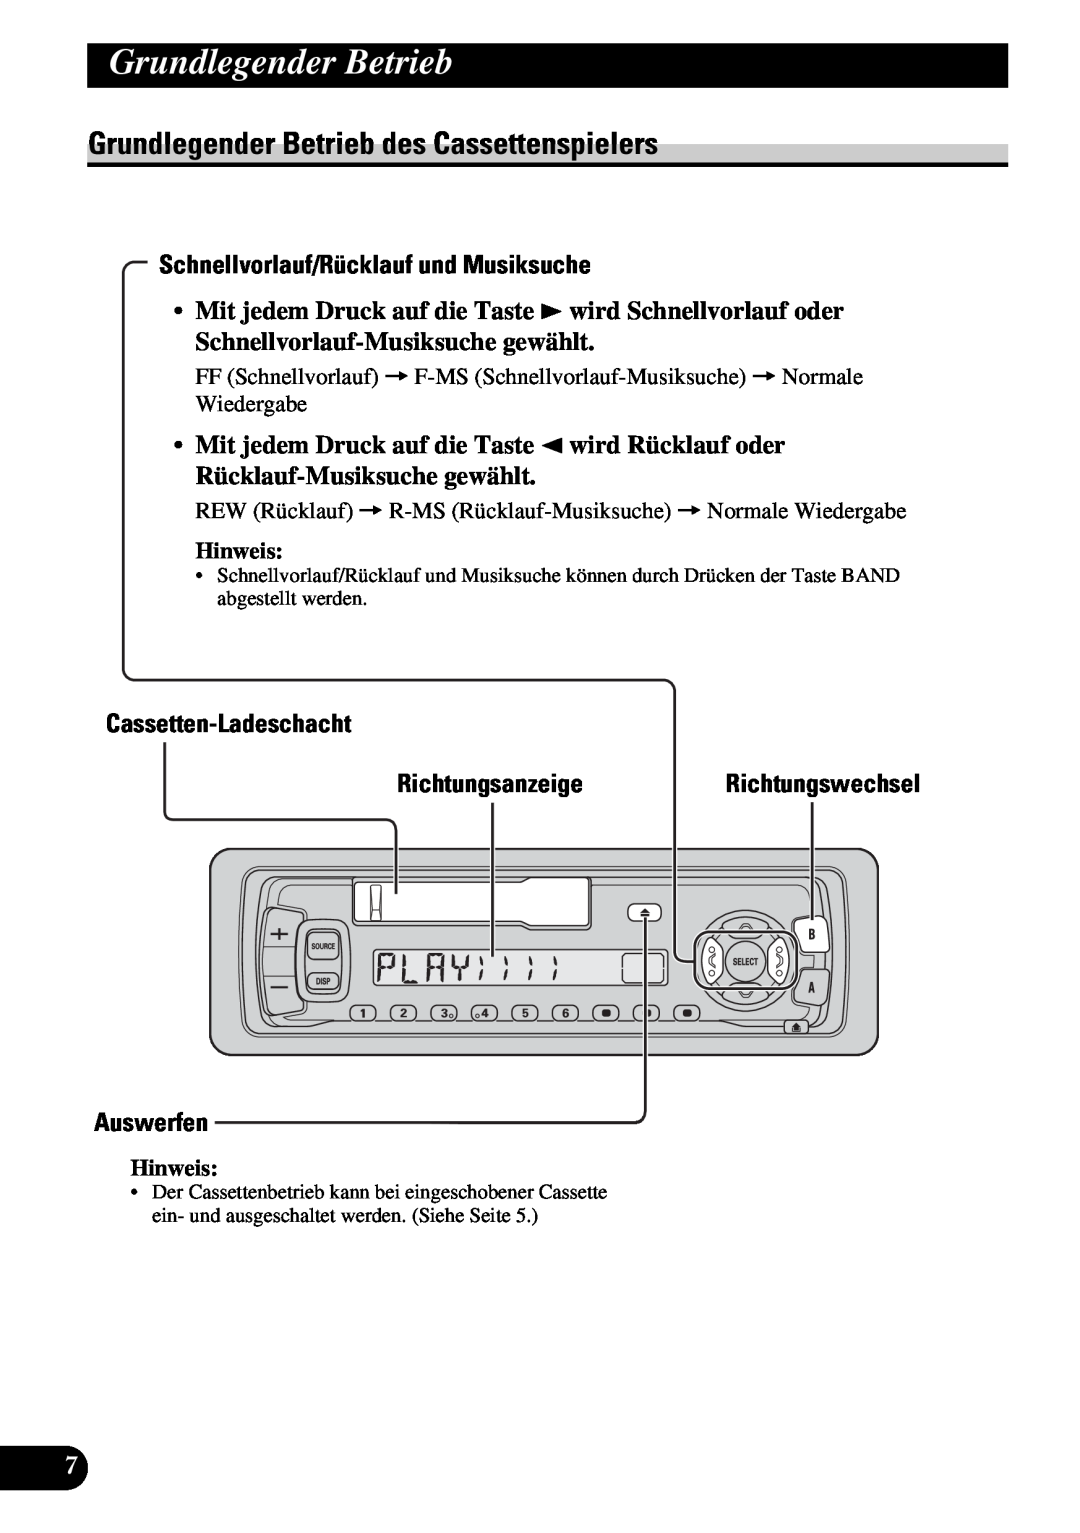 Pioneer KEH-3930R, KEH-3900R Grundlegender Betrieb des Cassettenspielers, Schnellvorlauf/Rücklauf und Musiksuche, Hinweis 